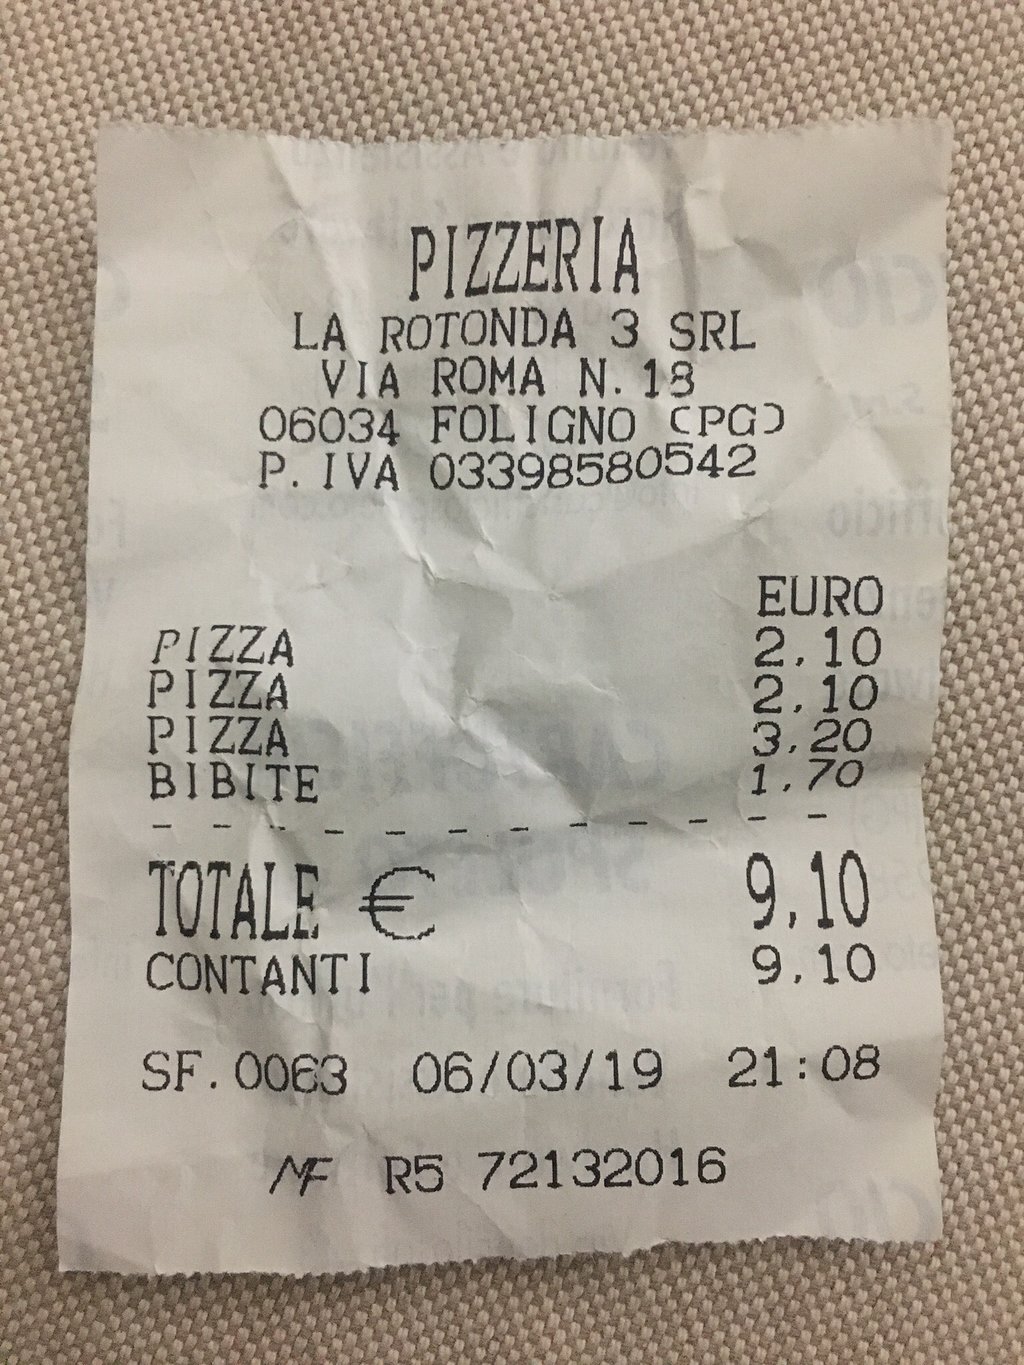 Pizzeria La Rotonda 4, Foligno